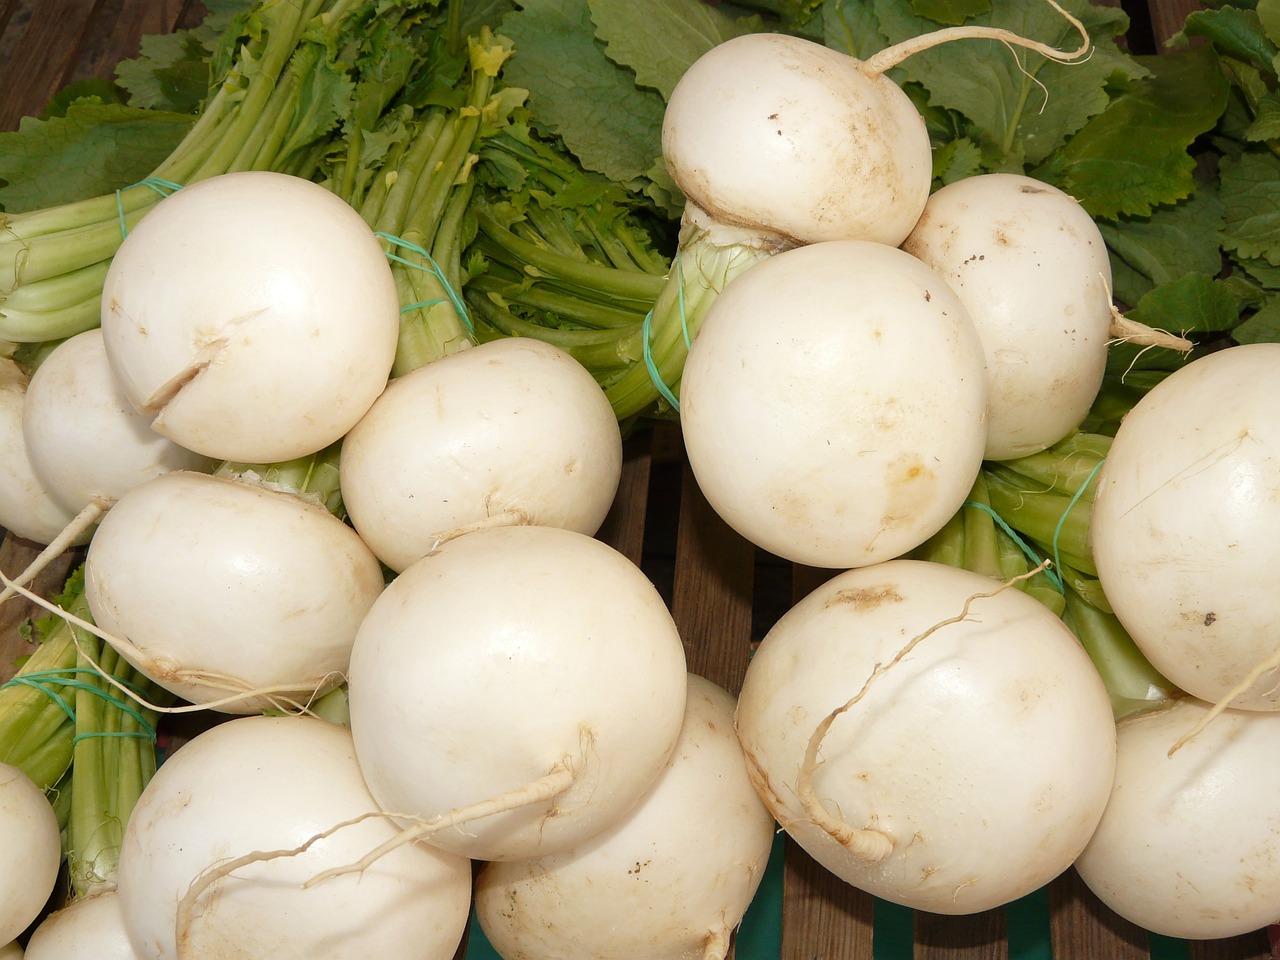 turnip nevett vegetable plant free photo